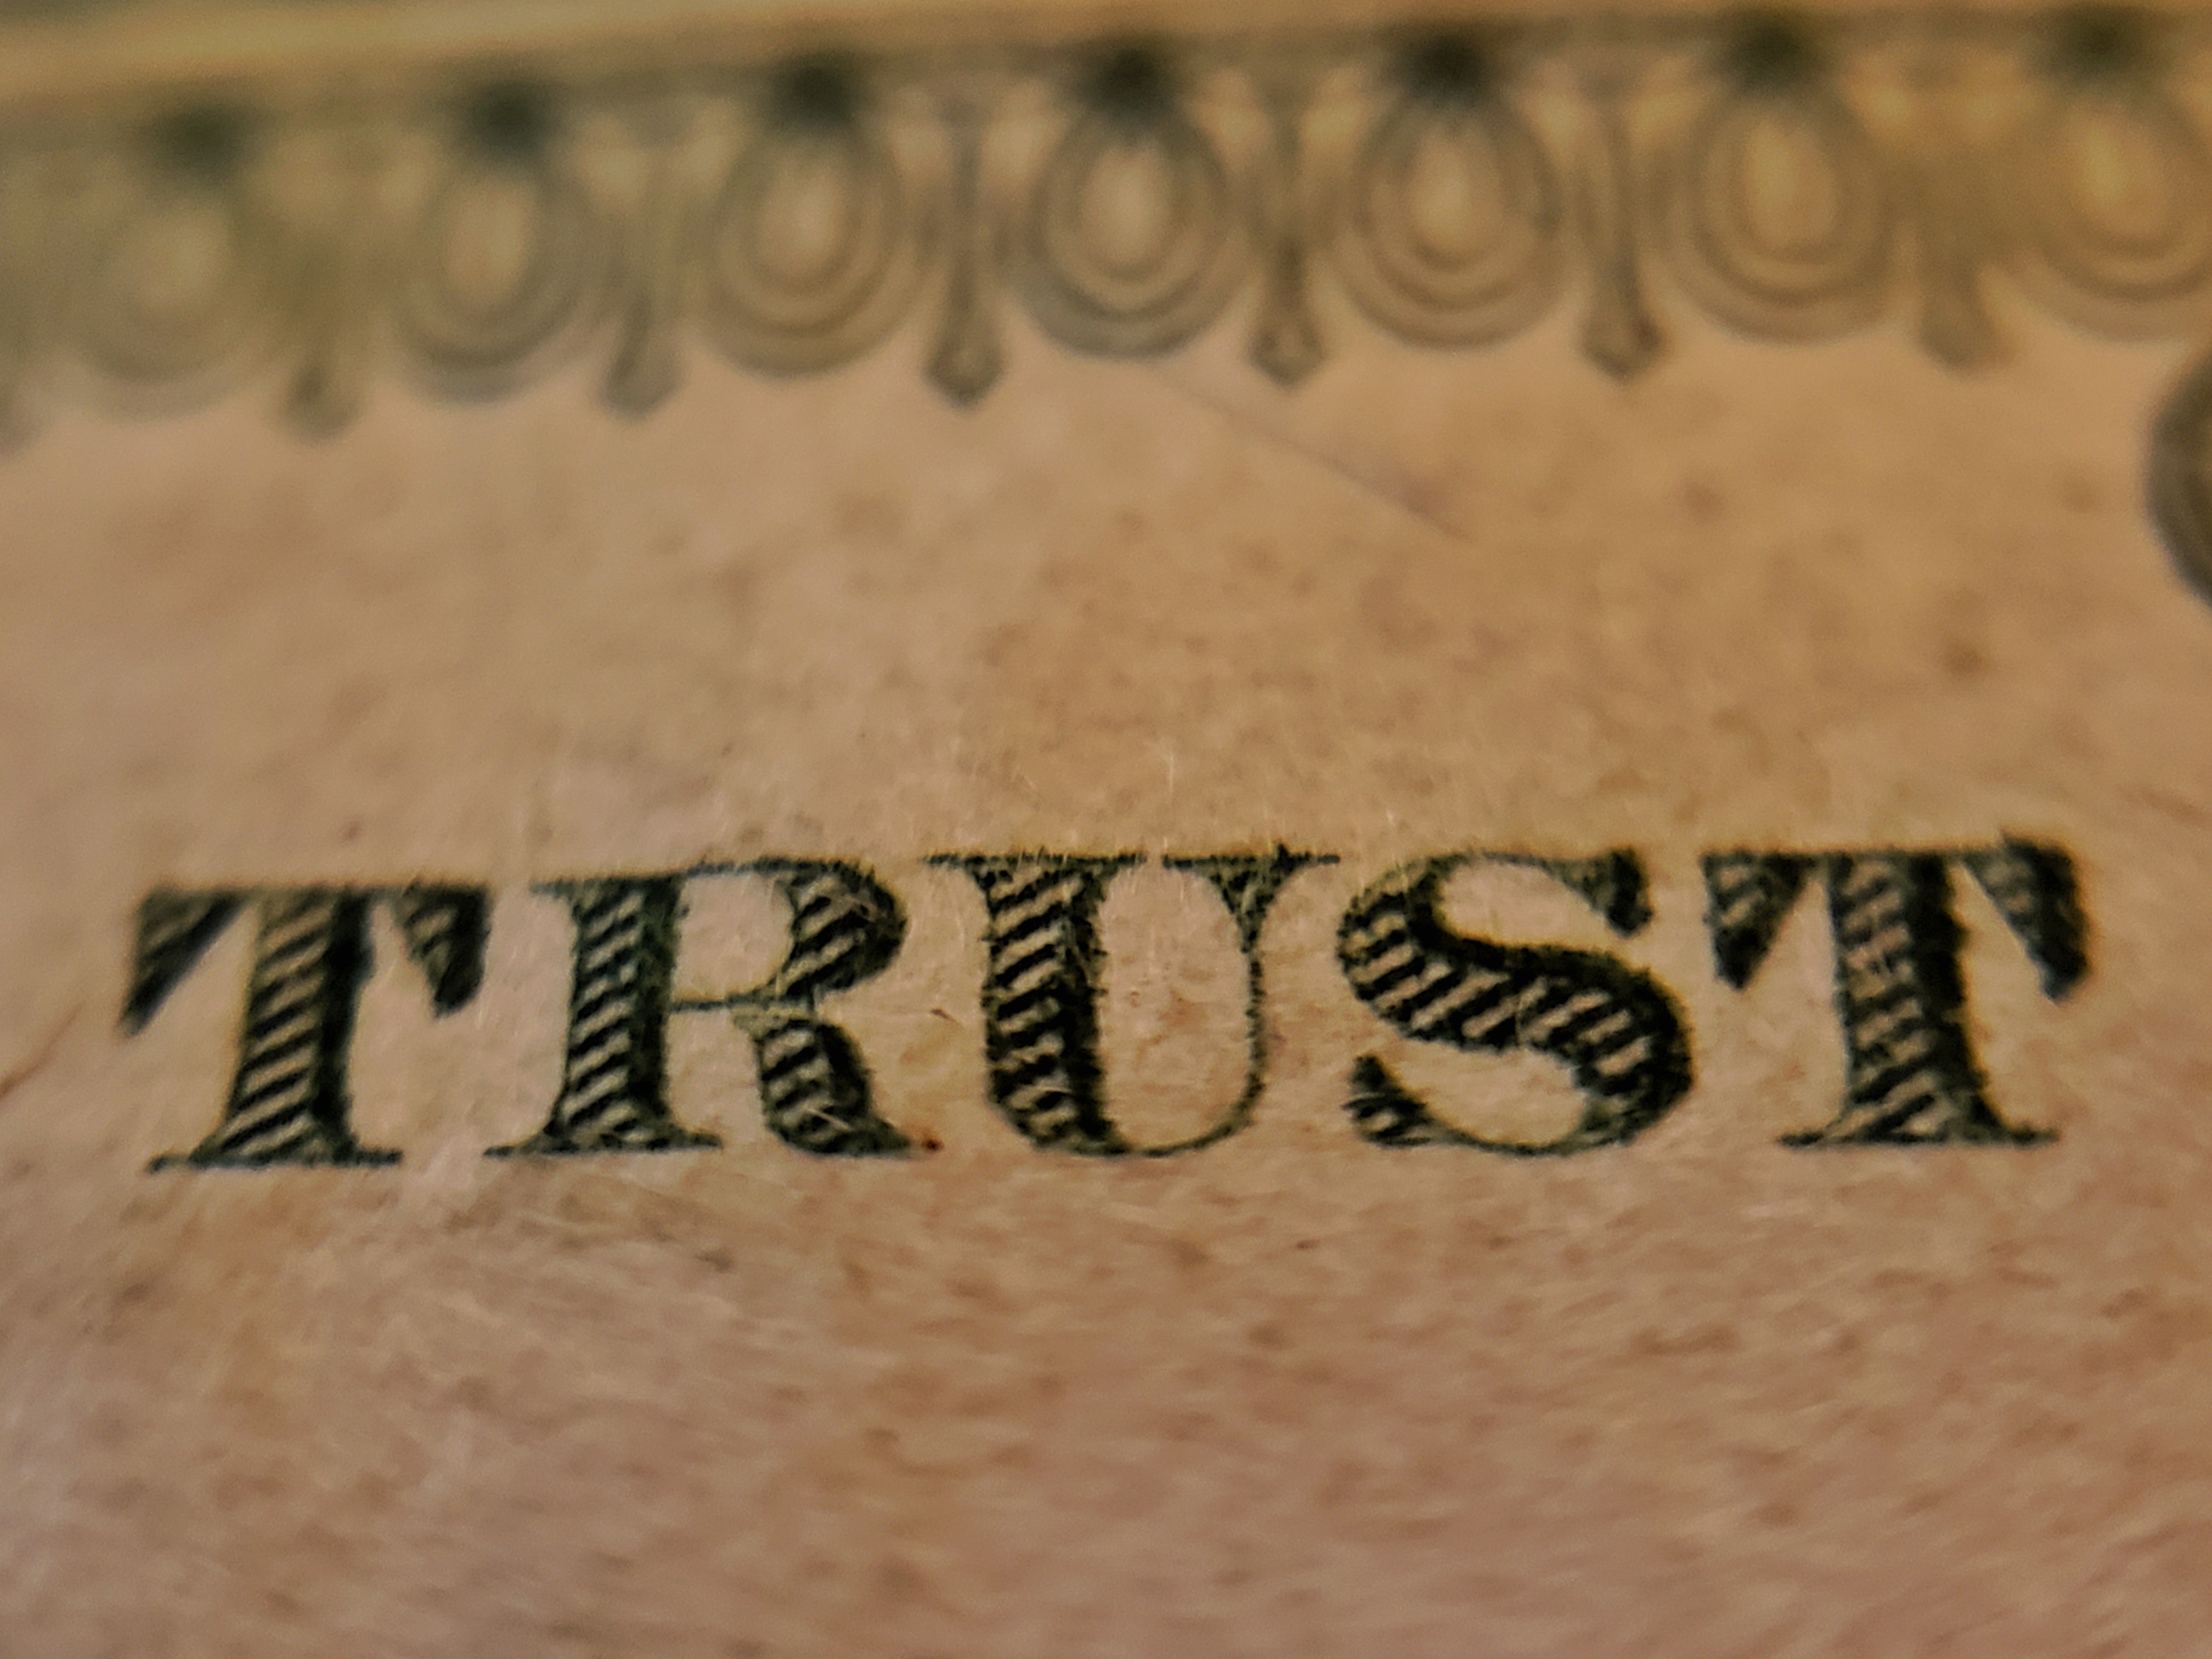 Photo d'un billet de banque américain, avec un zoom sur la partie "trust" de la devise "in god we trust" pour souligner la question de la confiance dans les investissements des banques